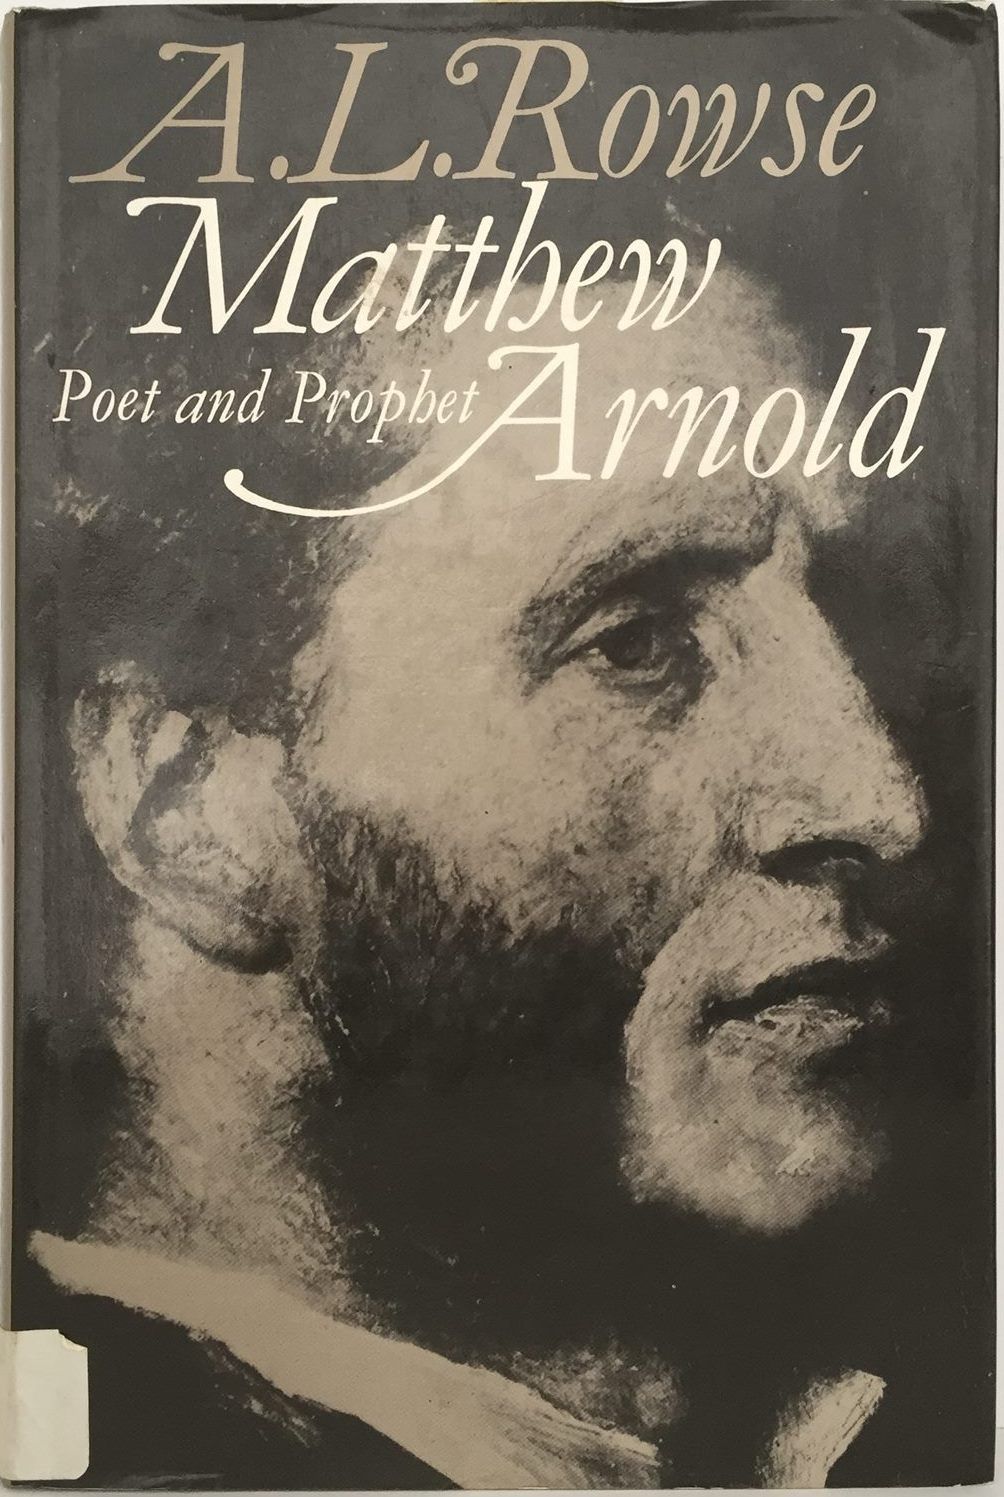 MATTHEW ARNOLD: Poet and Prophet